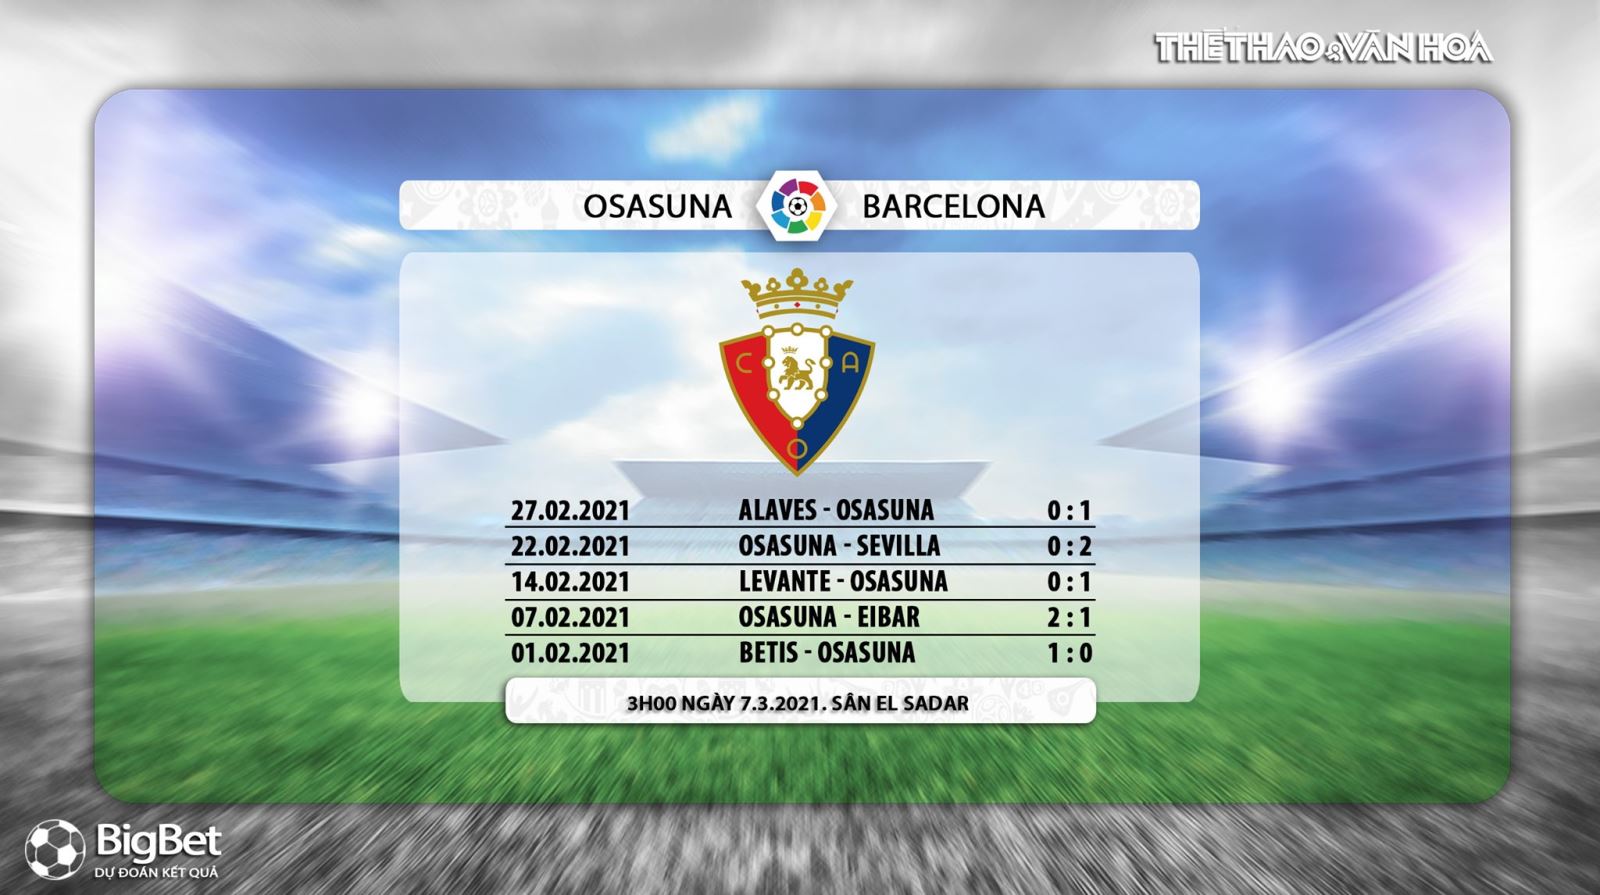 Keo nha cai, nhận định kết quả, Osasuna vs Barcelona, BĐTV trực tiếp bóng đá Tây Ban Nha, Barca, nhận định bóng đá Barcelona đấu với Osasuna, trực tiếp La Liga, bảng xếp hạng bóng đá TBN